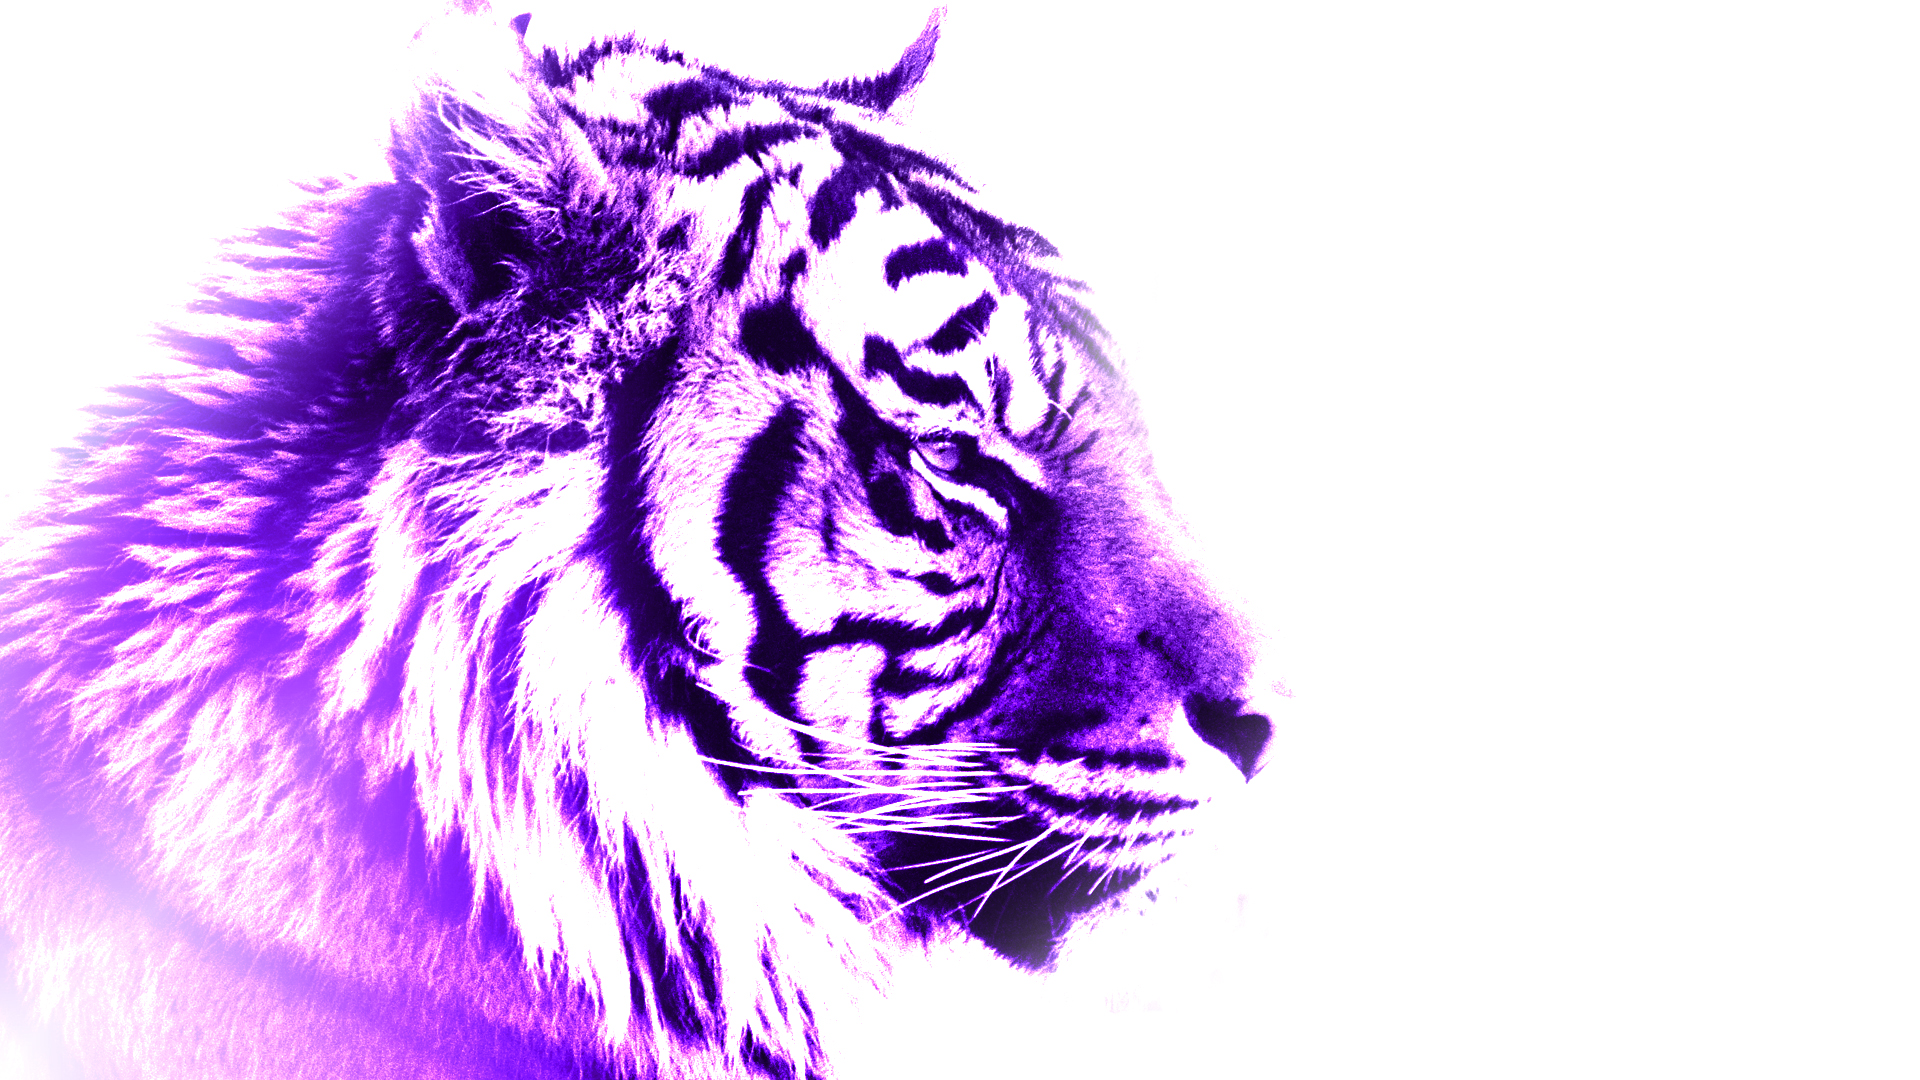 Purple Tiger by FlamingShrapnel on DeviantArt